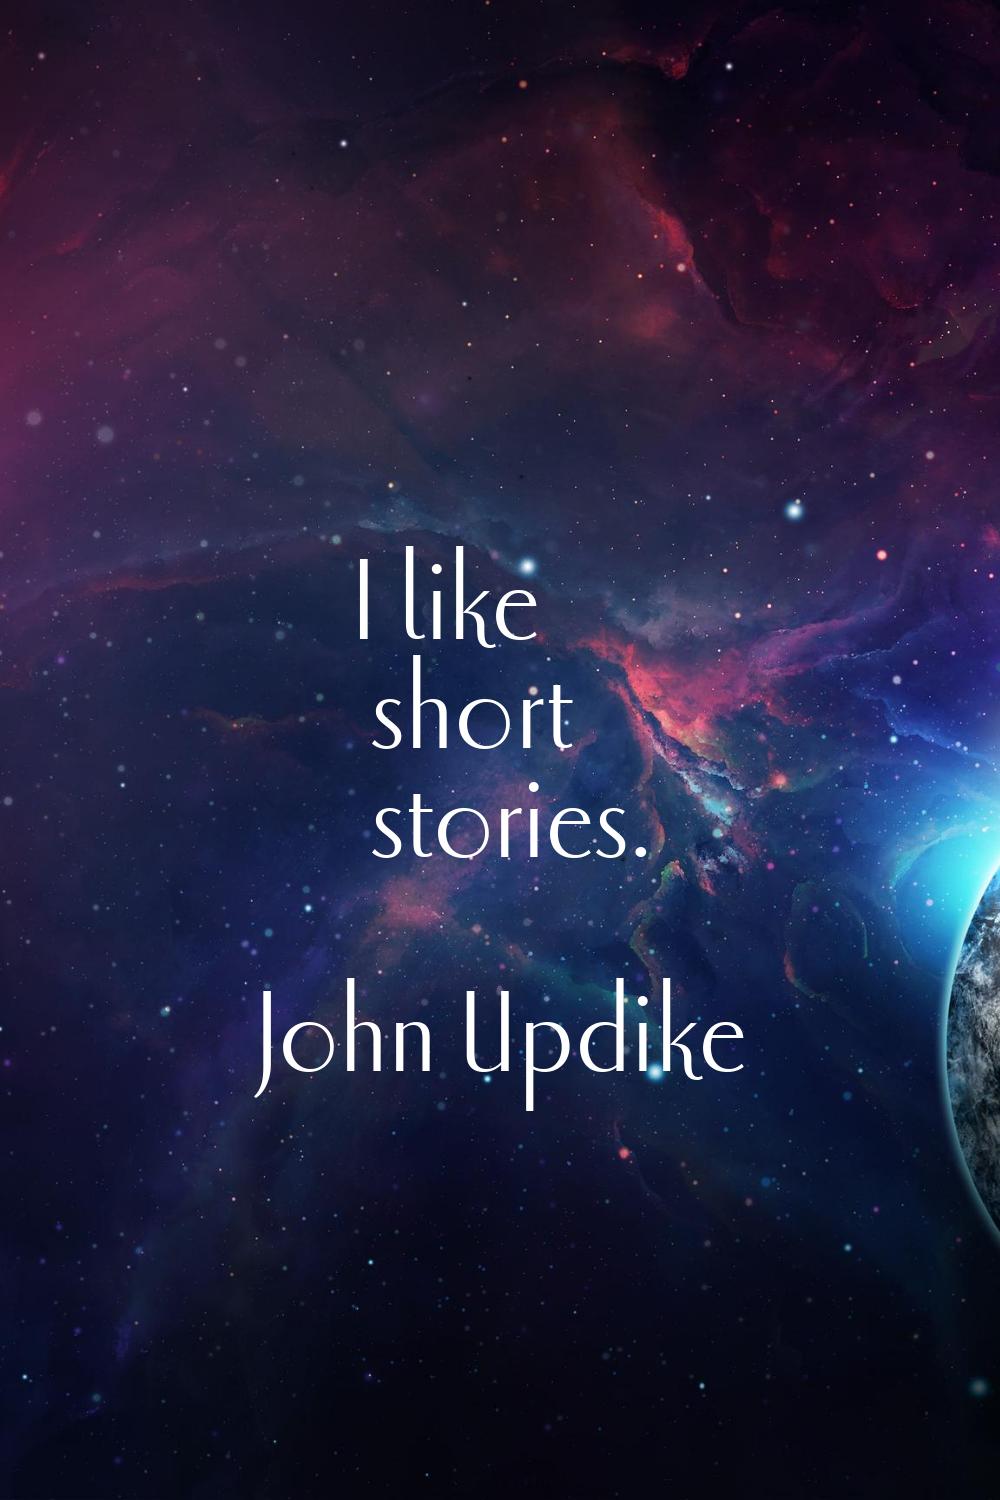 I like short stories.